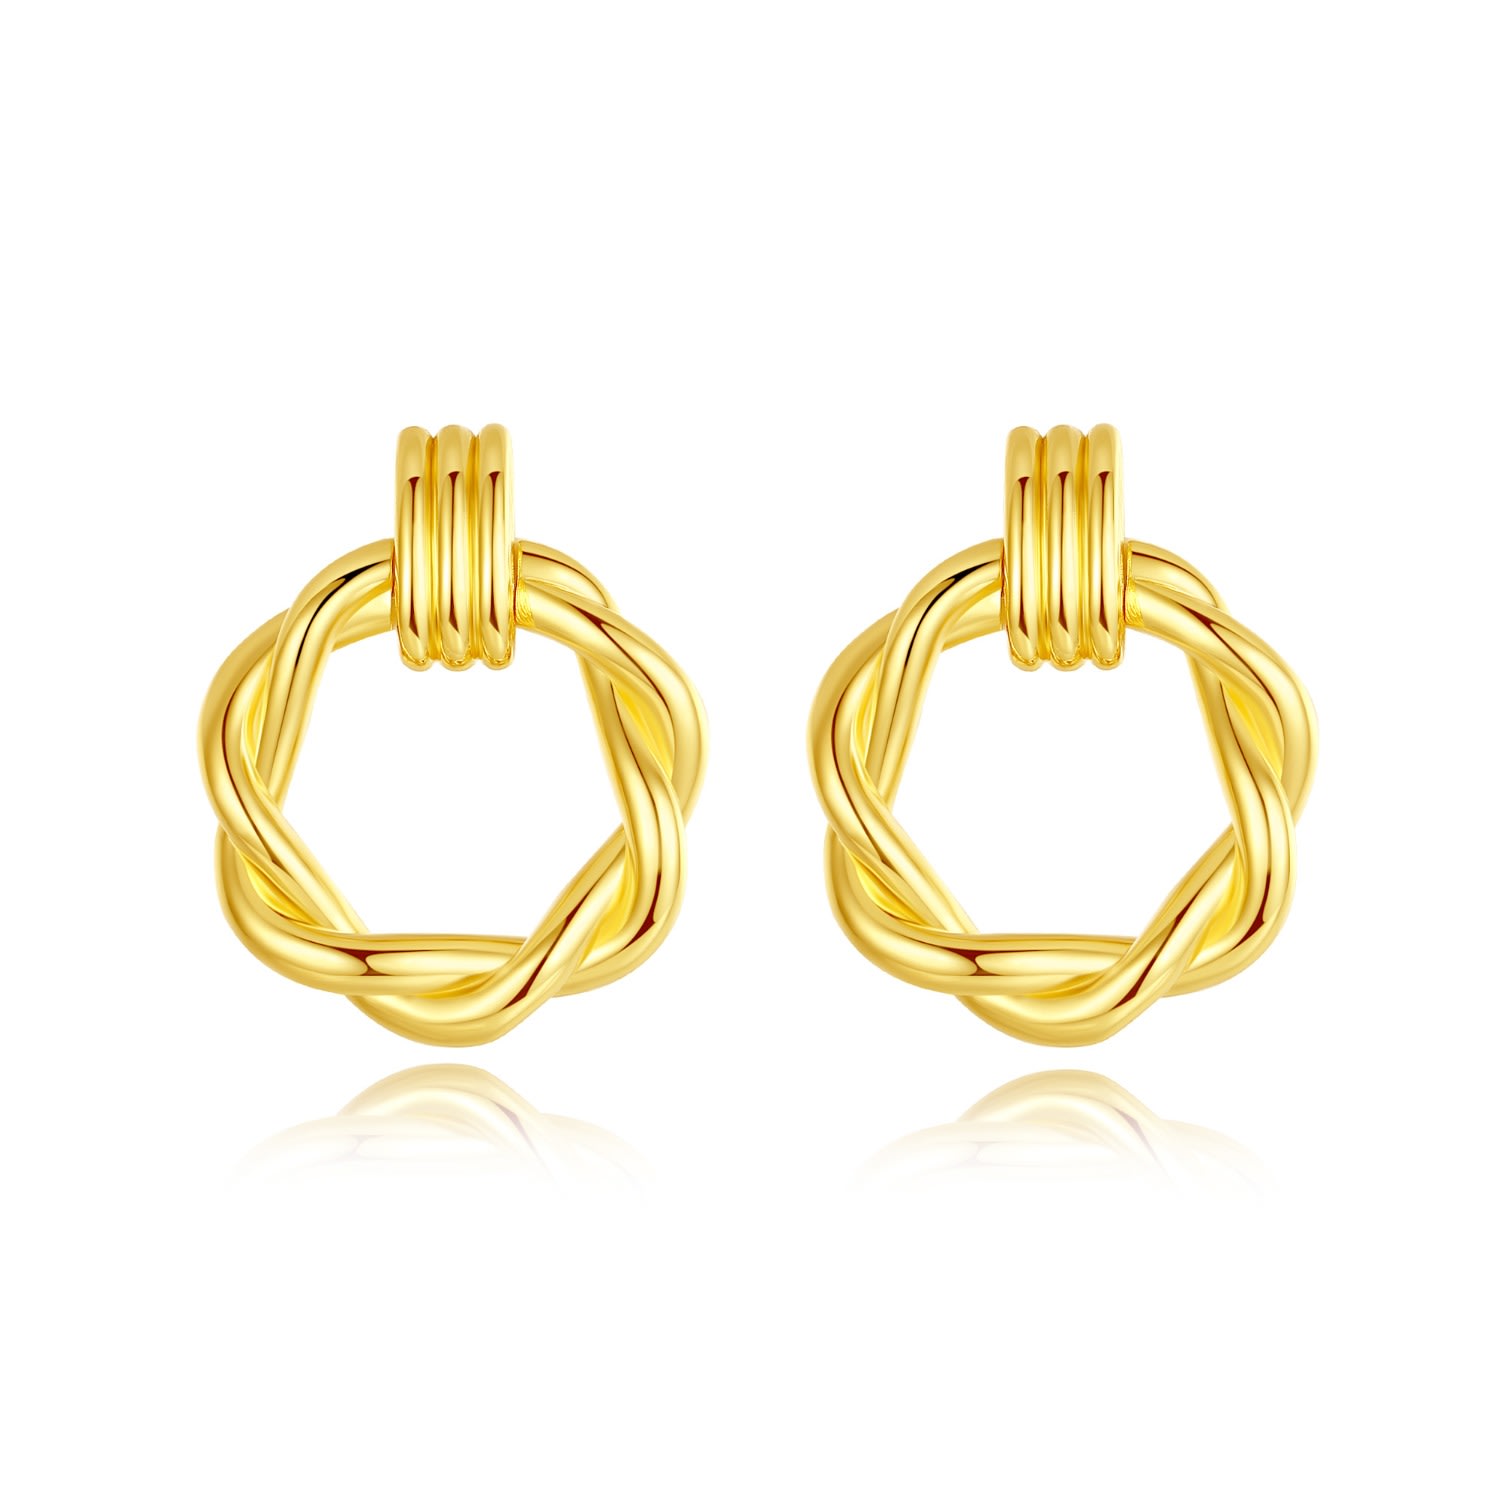 Shop Classicharms Women's Gold Eléa Twisted Hoop Earrings